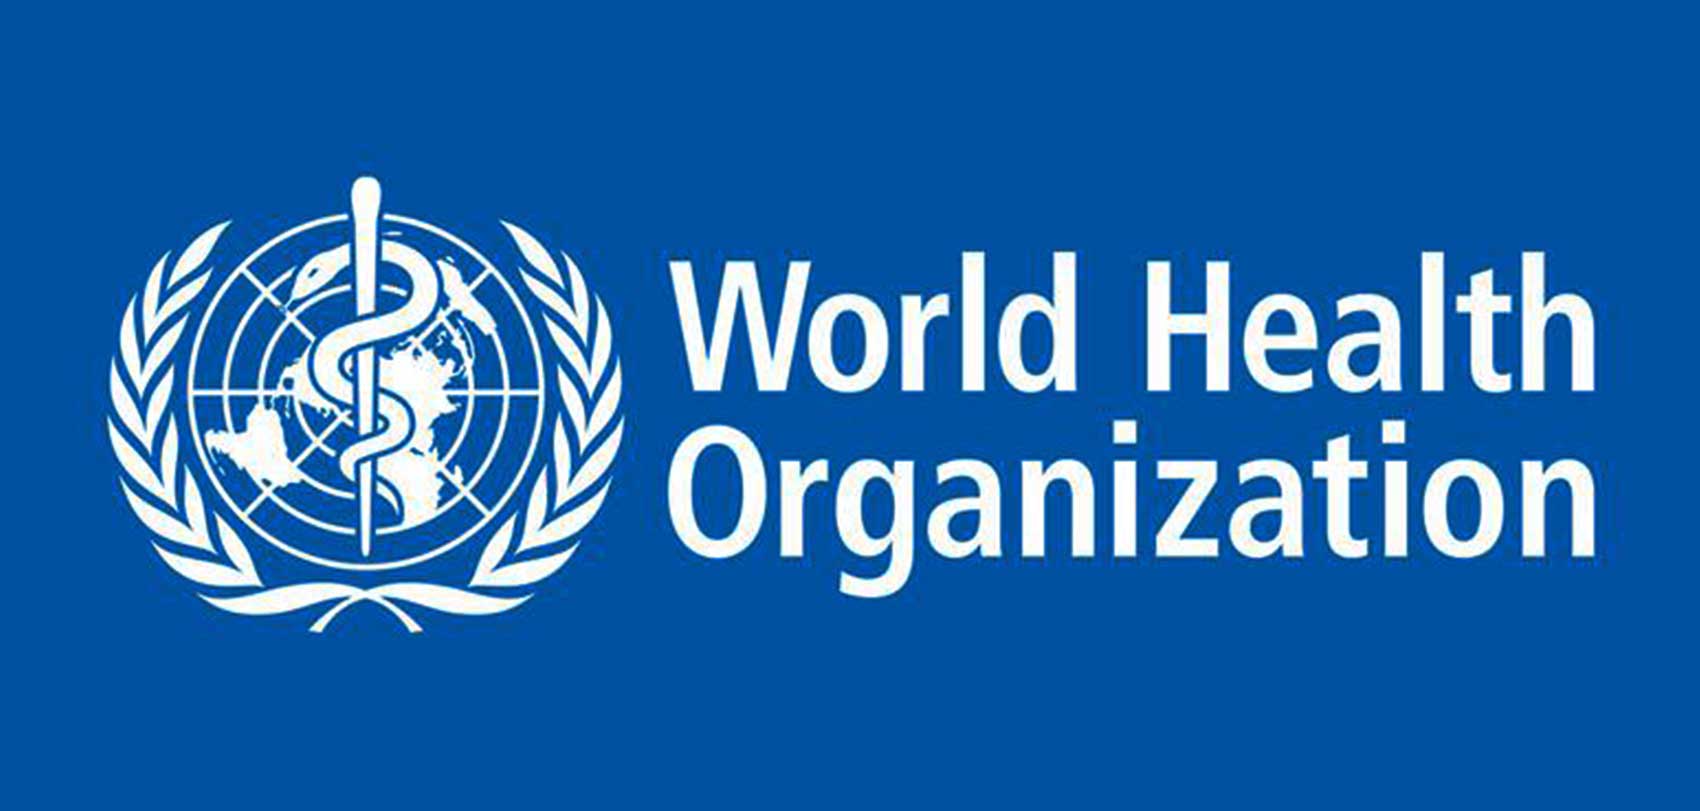 कोभिड महामारीसँग जुझ्न नेपाललाई आपत्कालीन सहयोग आवश्यक छ :विश्व स्वास्थ्य सङ्गठन